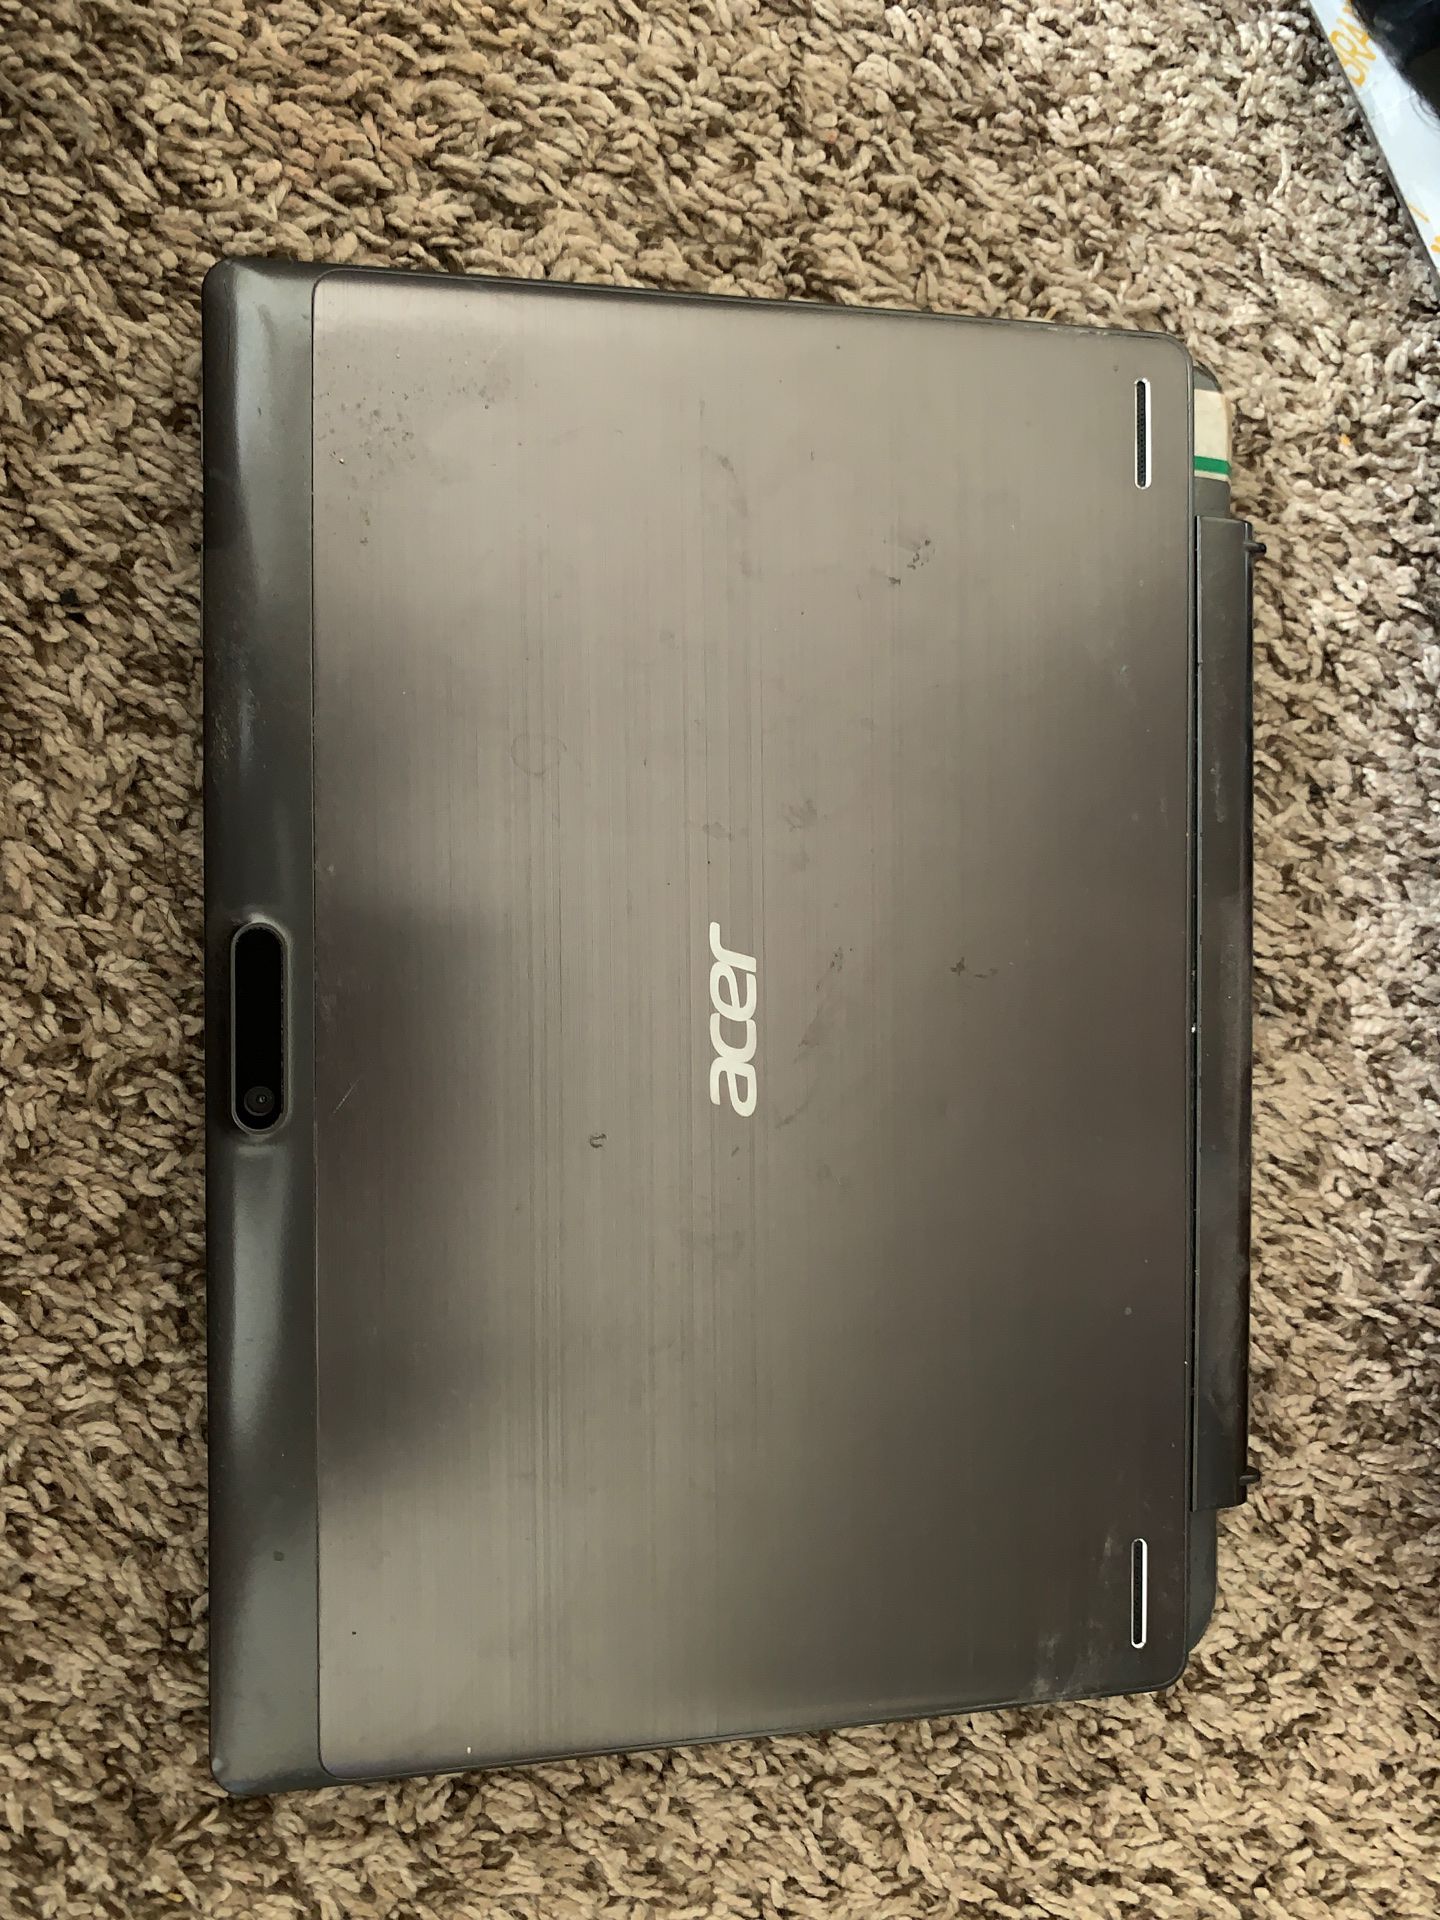 Acer tablet/ laptop